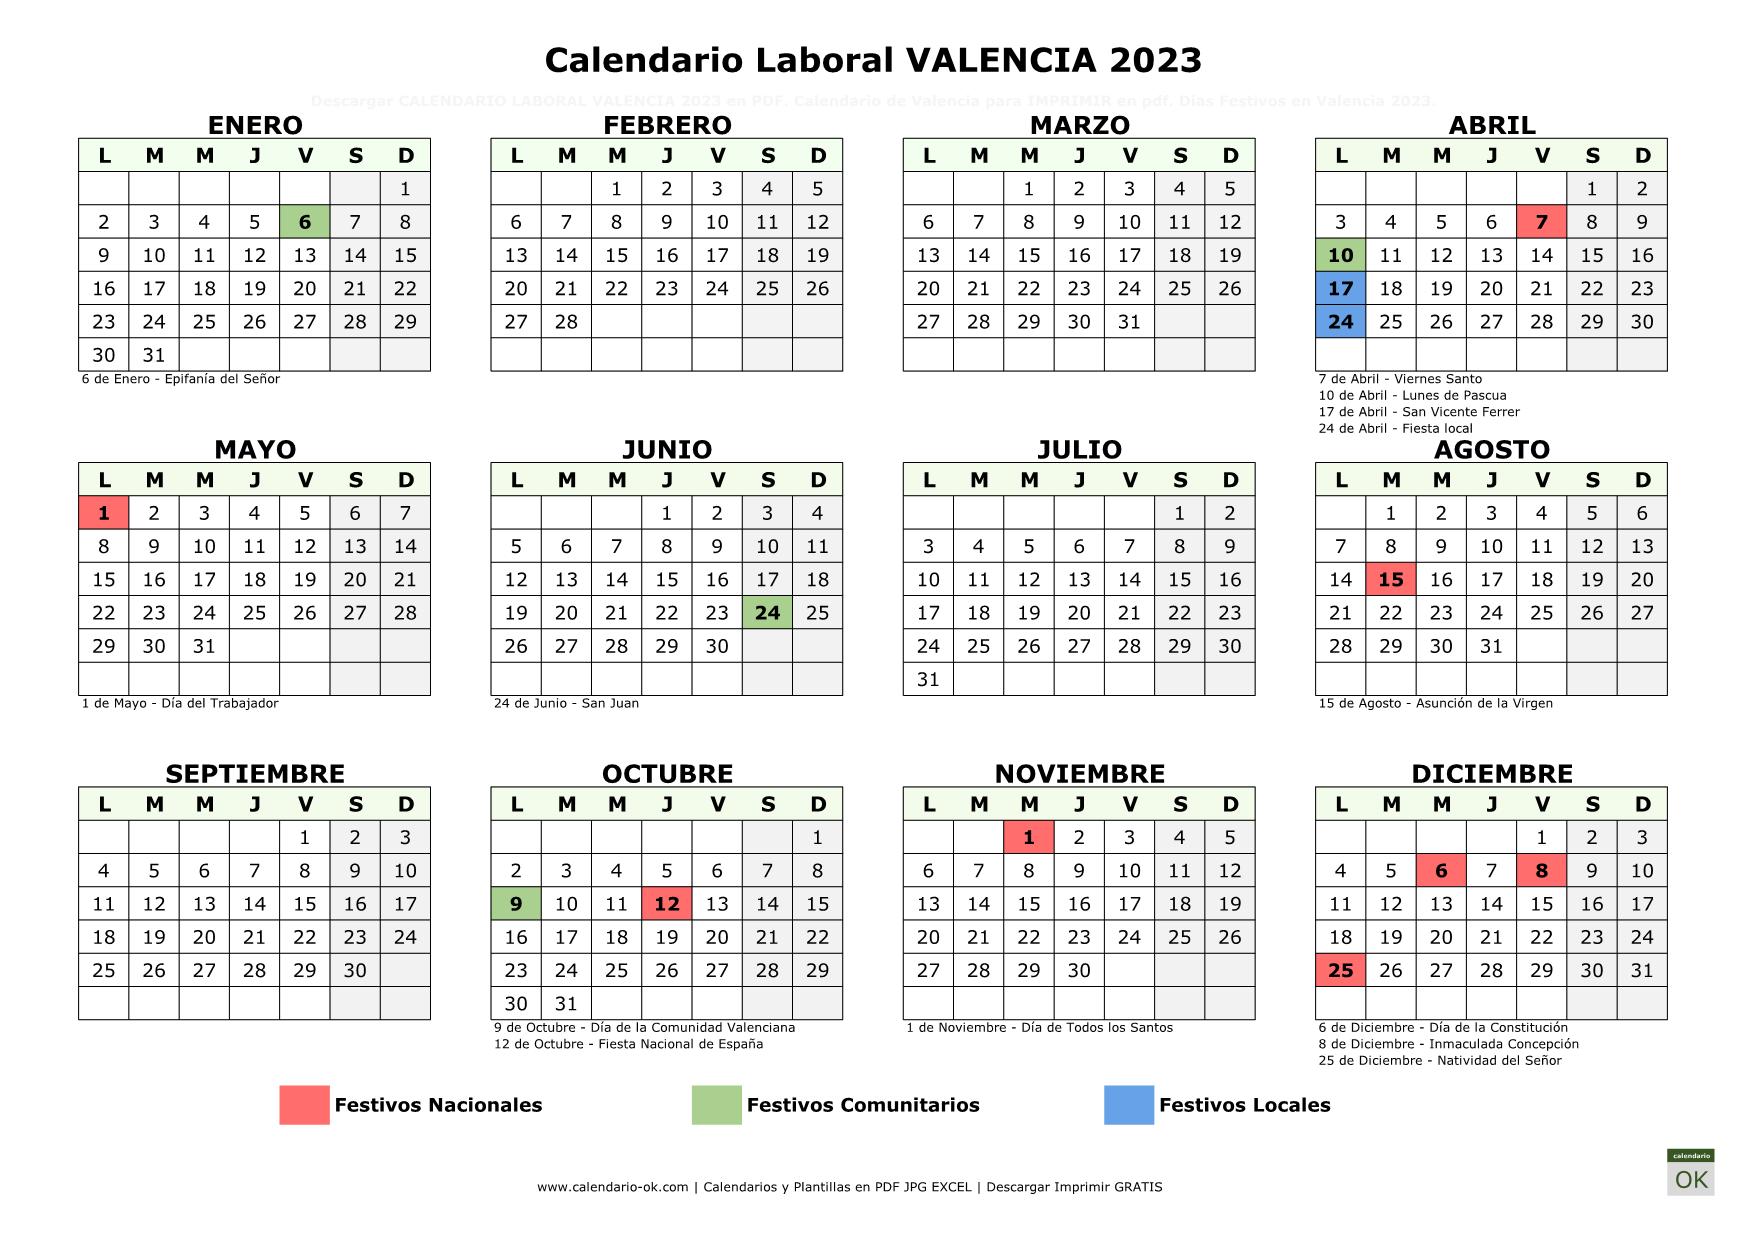 Calendario Laboral Valencia 2023 horizontal